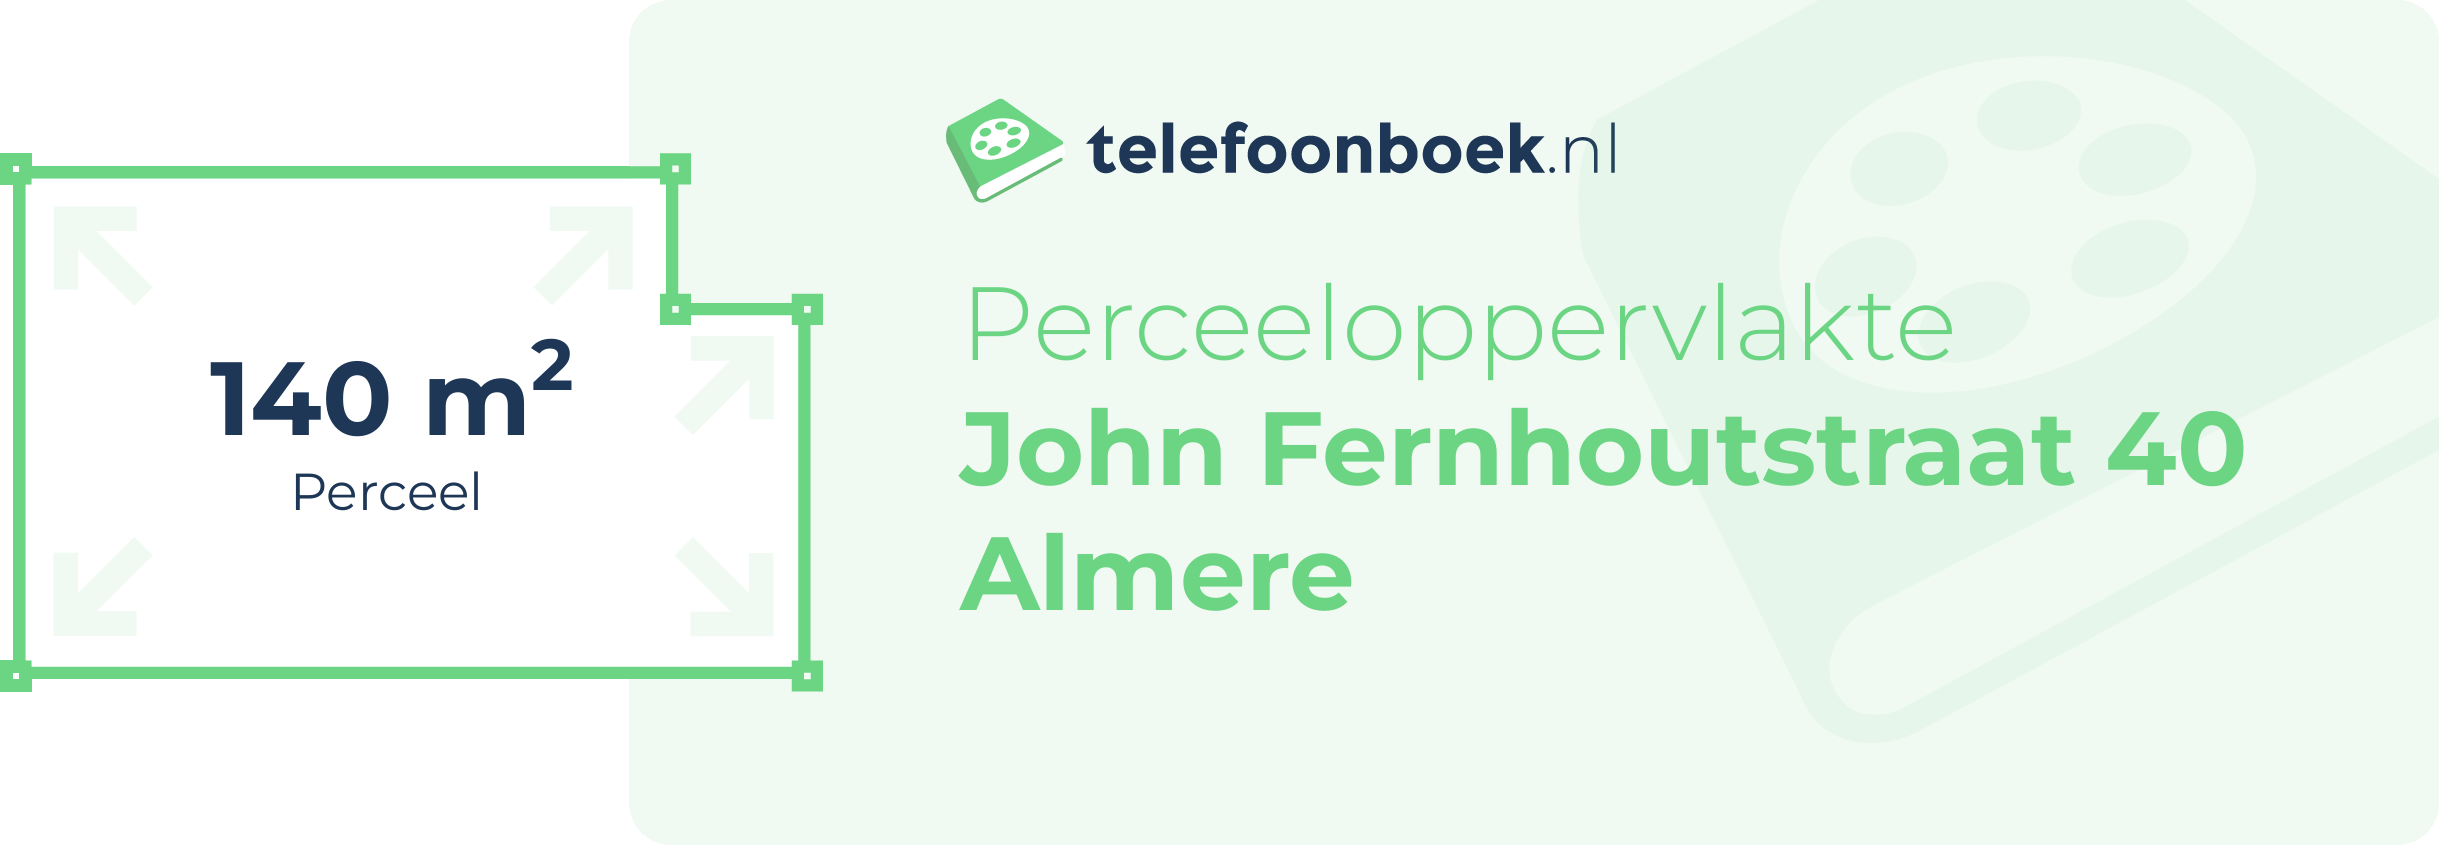 Perceeloppervlakte John Fernhoutstraat 40 Almere